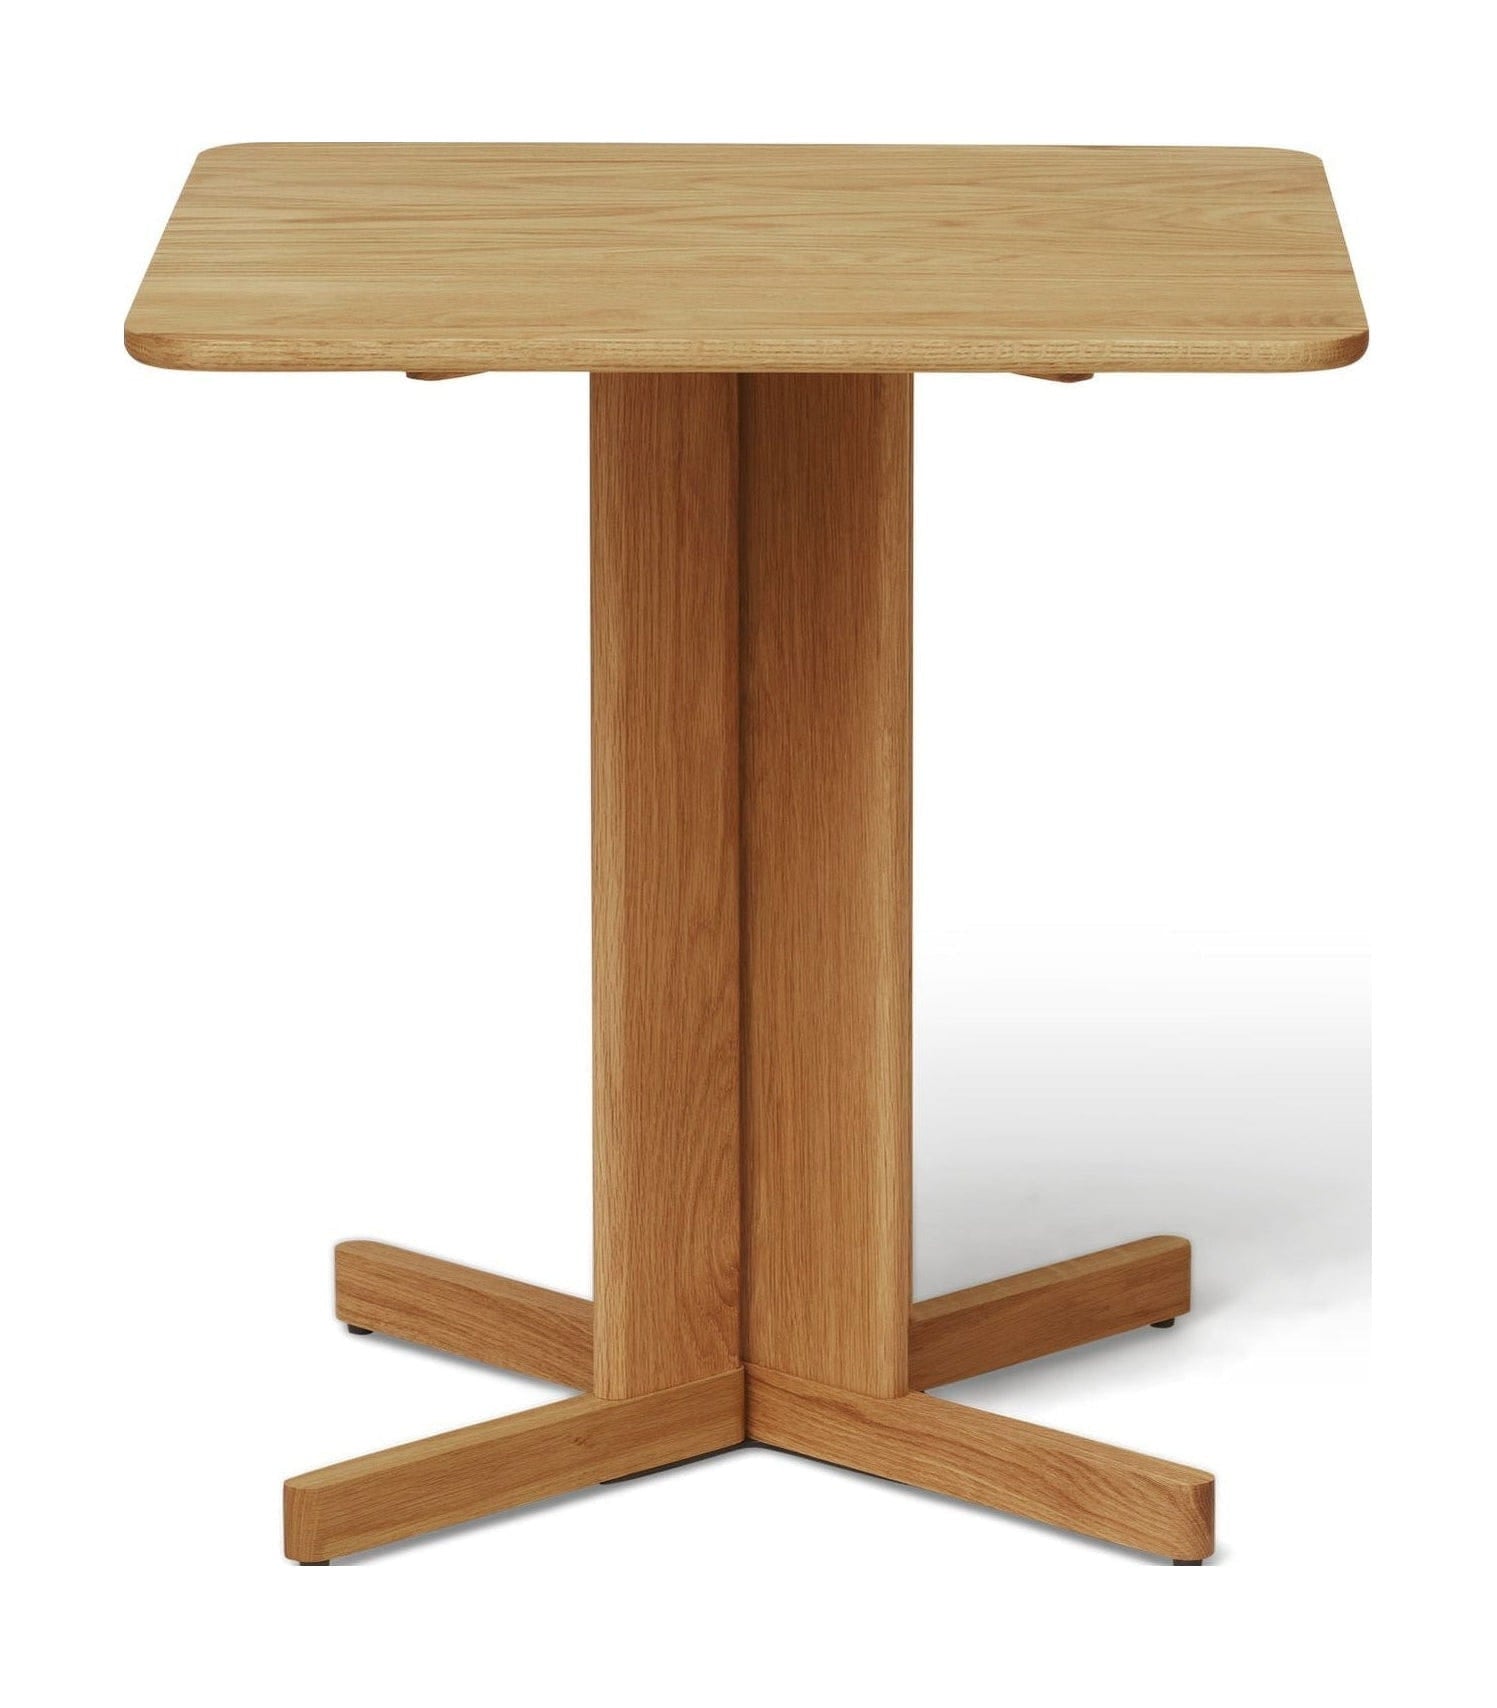 Form & Refine Quatrefoil Table 68x68 Cm. Oak